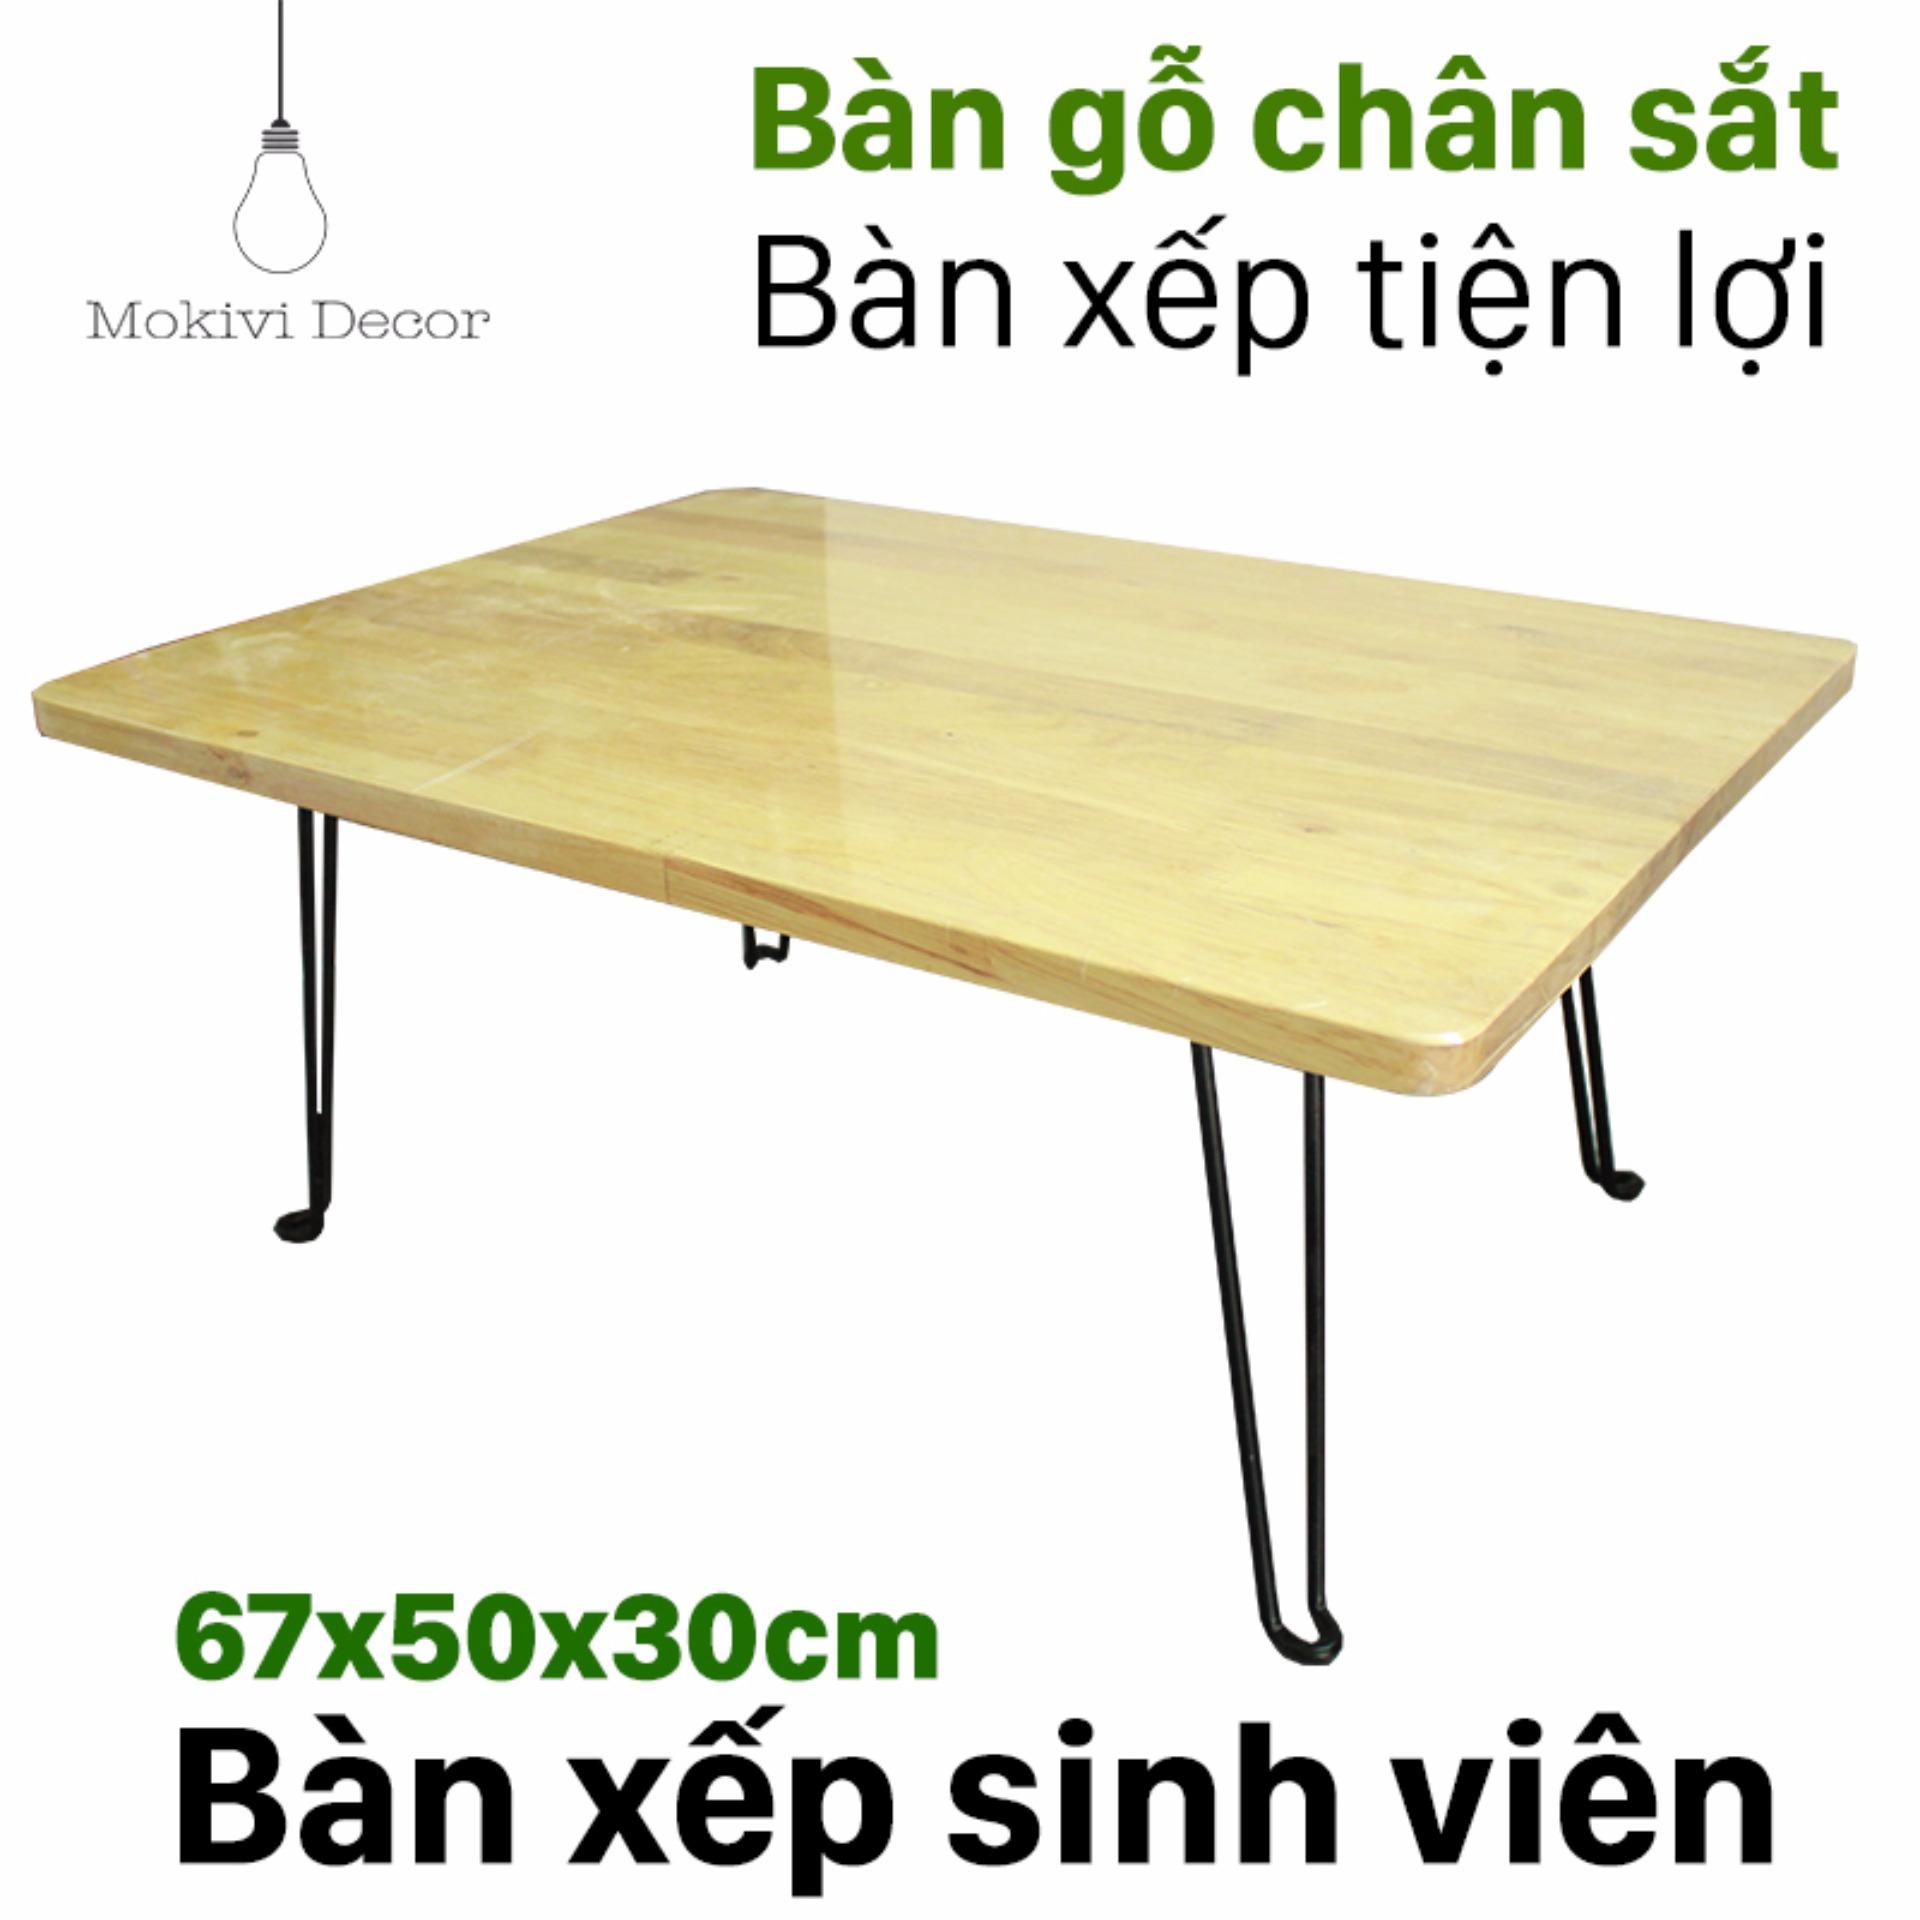 Bàn gỗ laptop (Tự Nhiên) mặt bàn 67x50x30cm - bàn gỗ laptop XẾP GỌN - Bàn học sinh viên